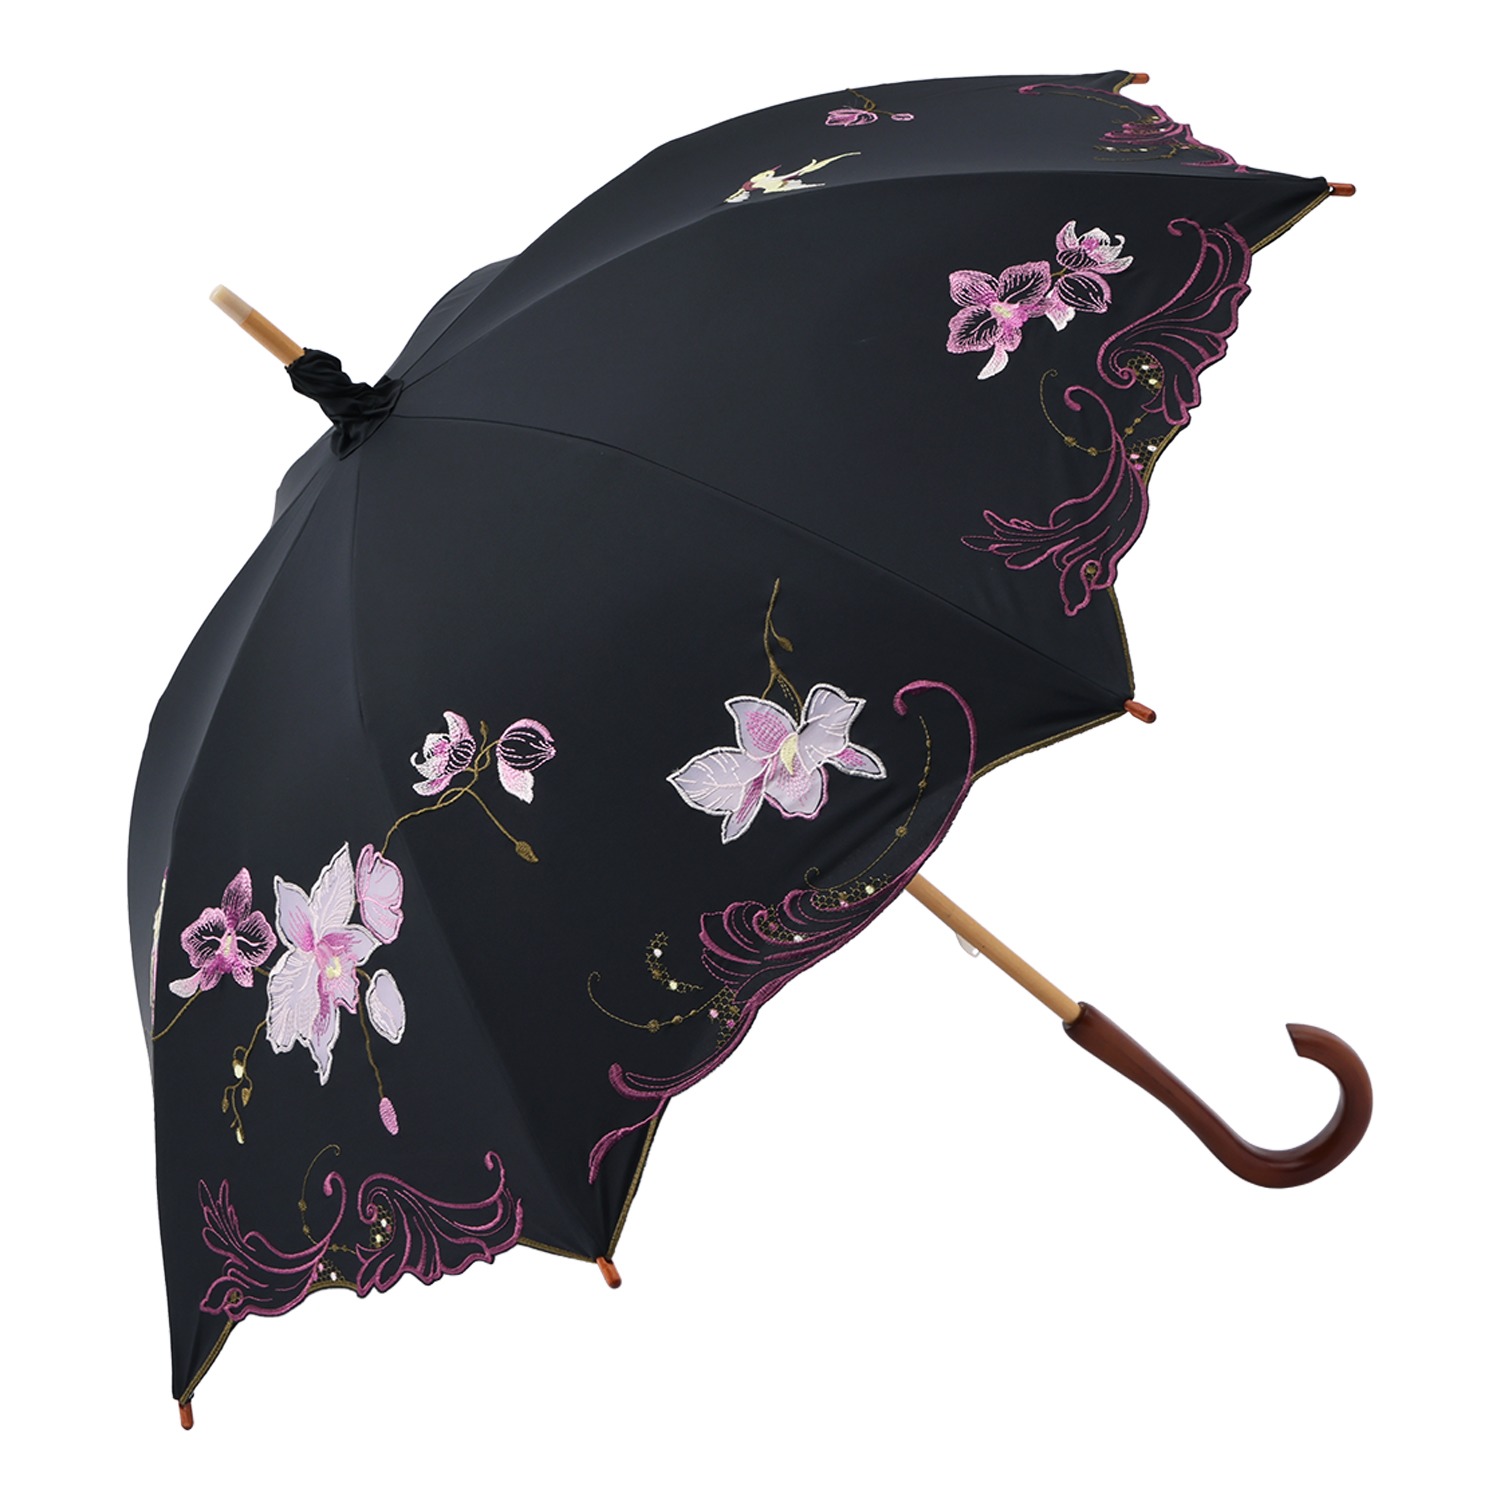 シノワズリーモダン 女優日傘プレミアム 蘭花刺しゅう かわず張り 長日傘